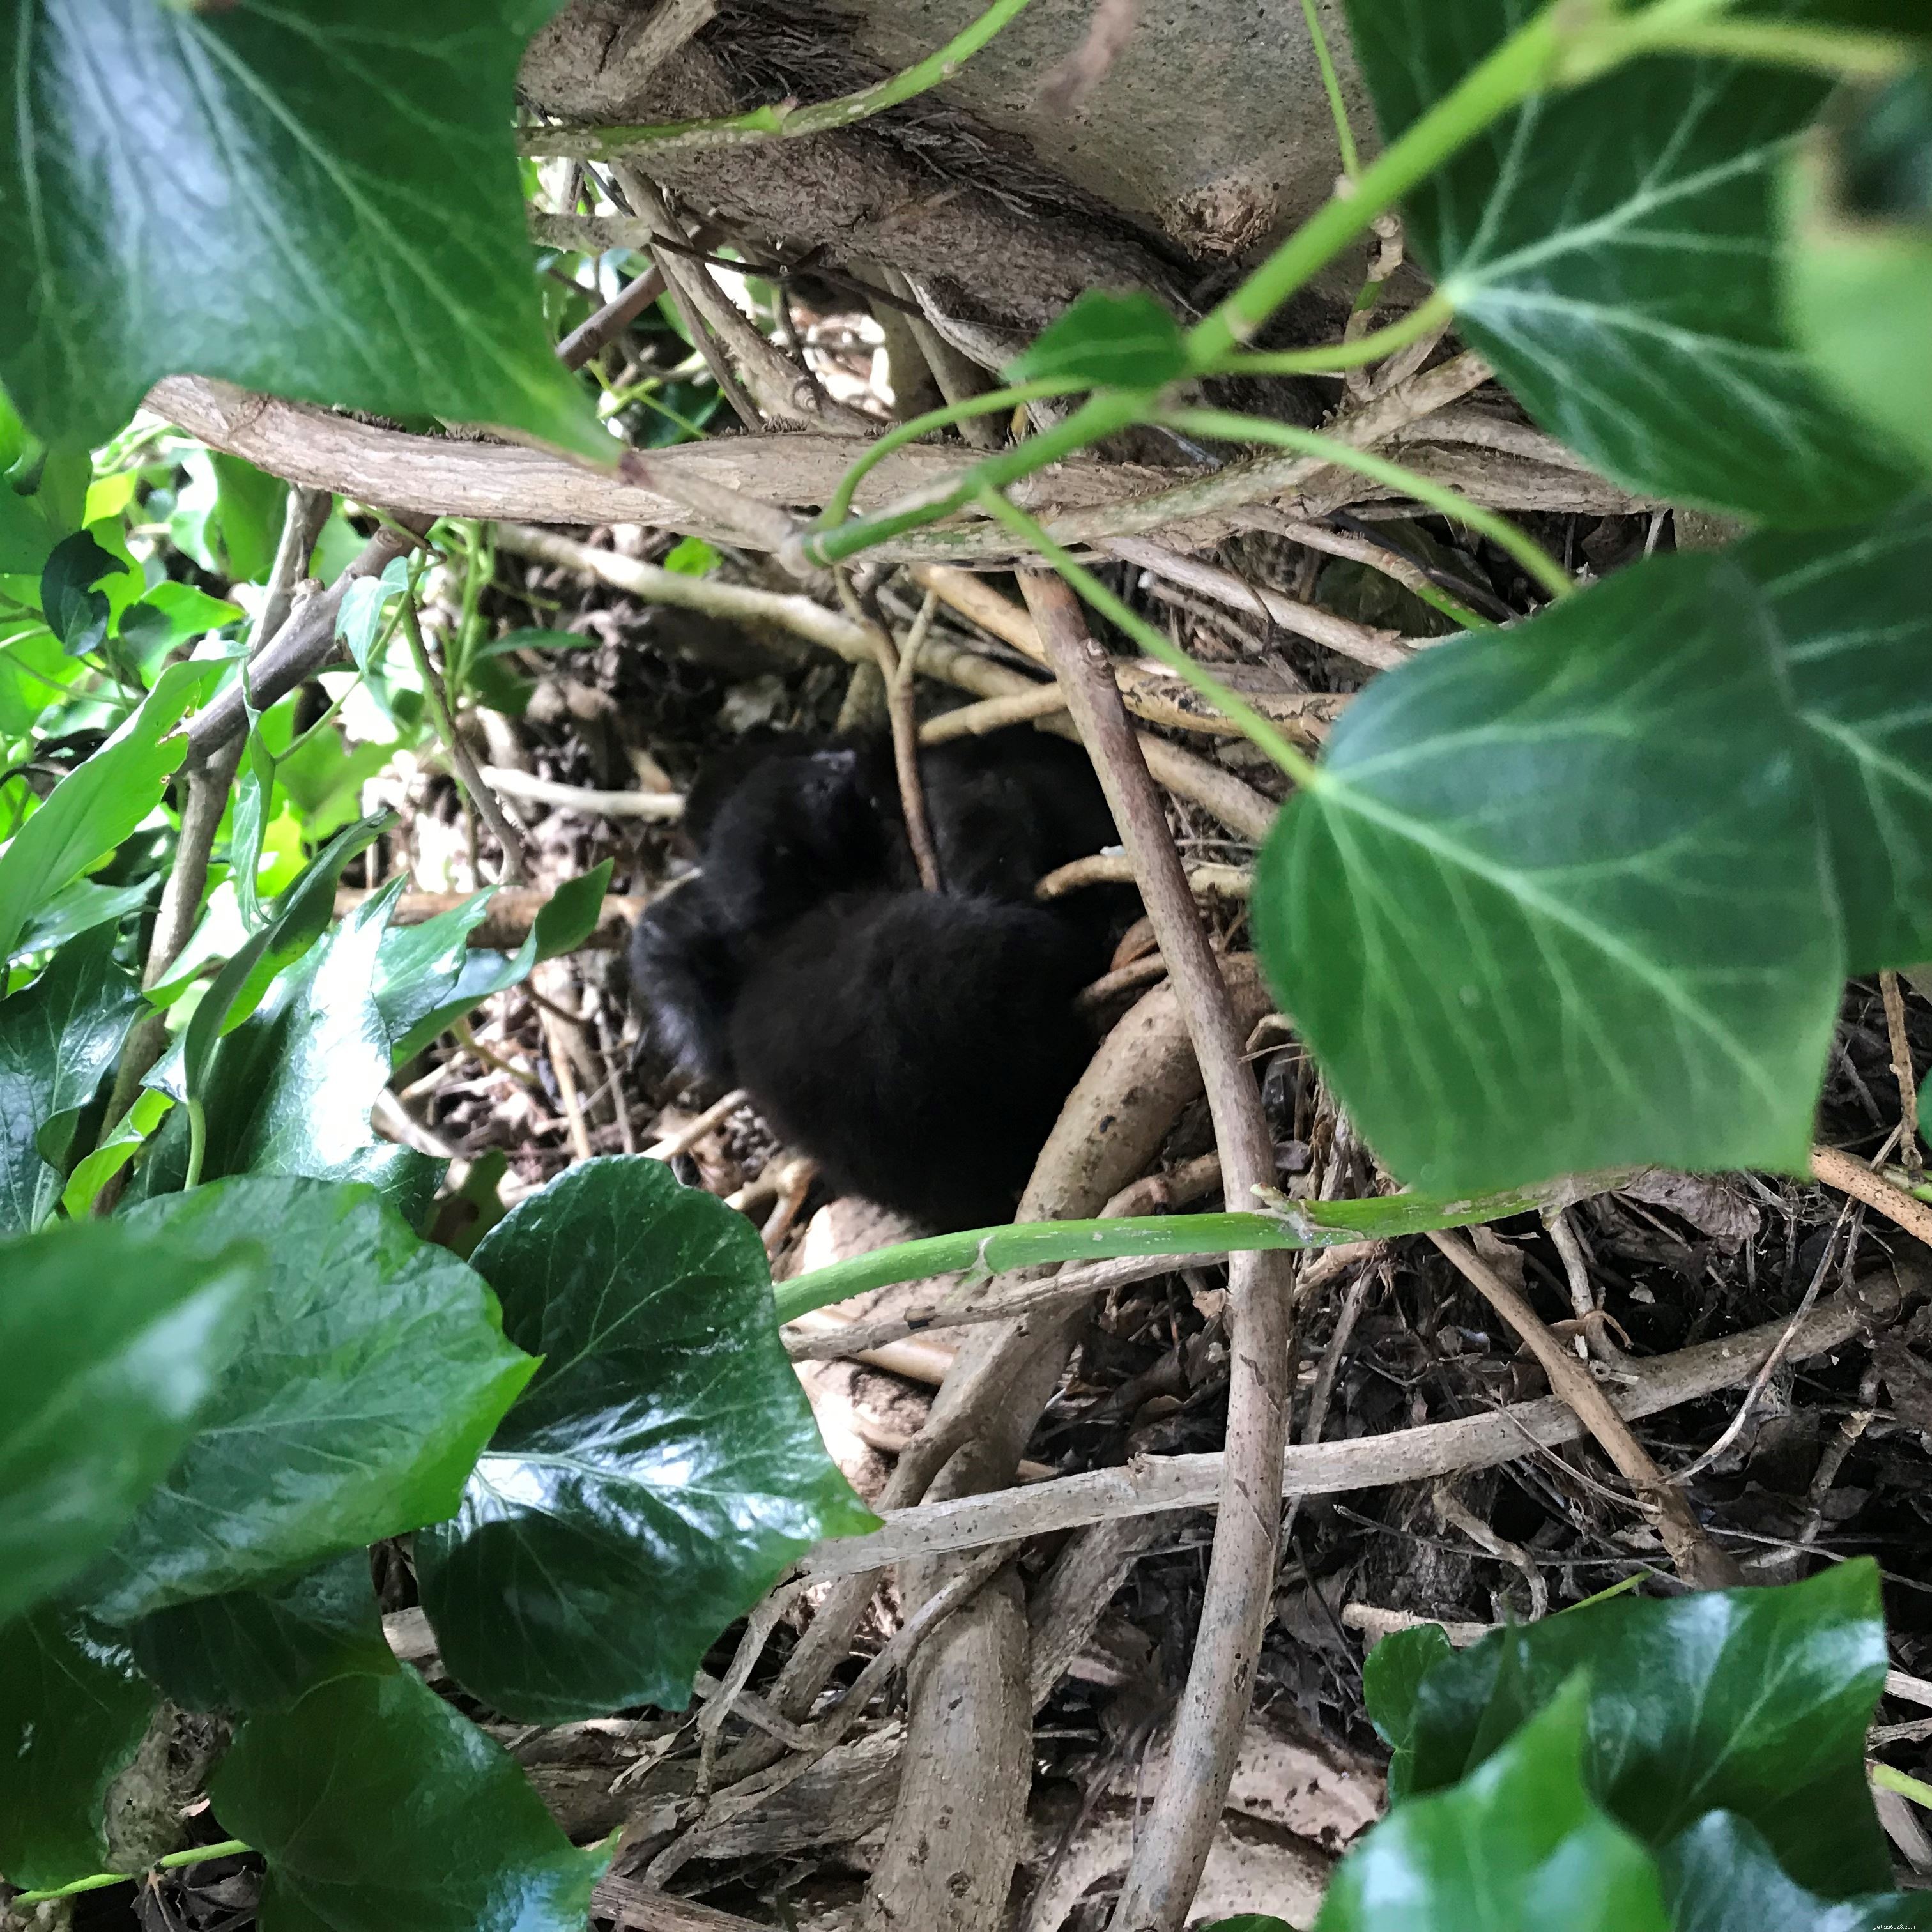 En mammakatt och hennes kattungar hittades häckande i ett träd i Buckinghamshire, övervakad av den kärleksfulla pappakatten